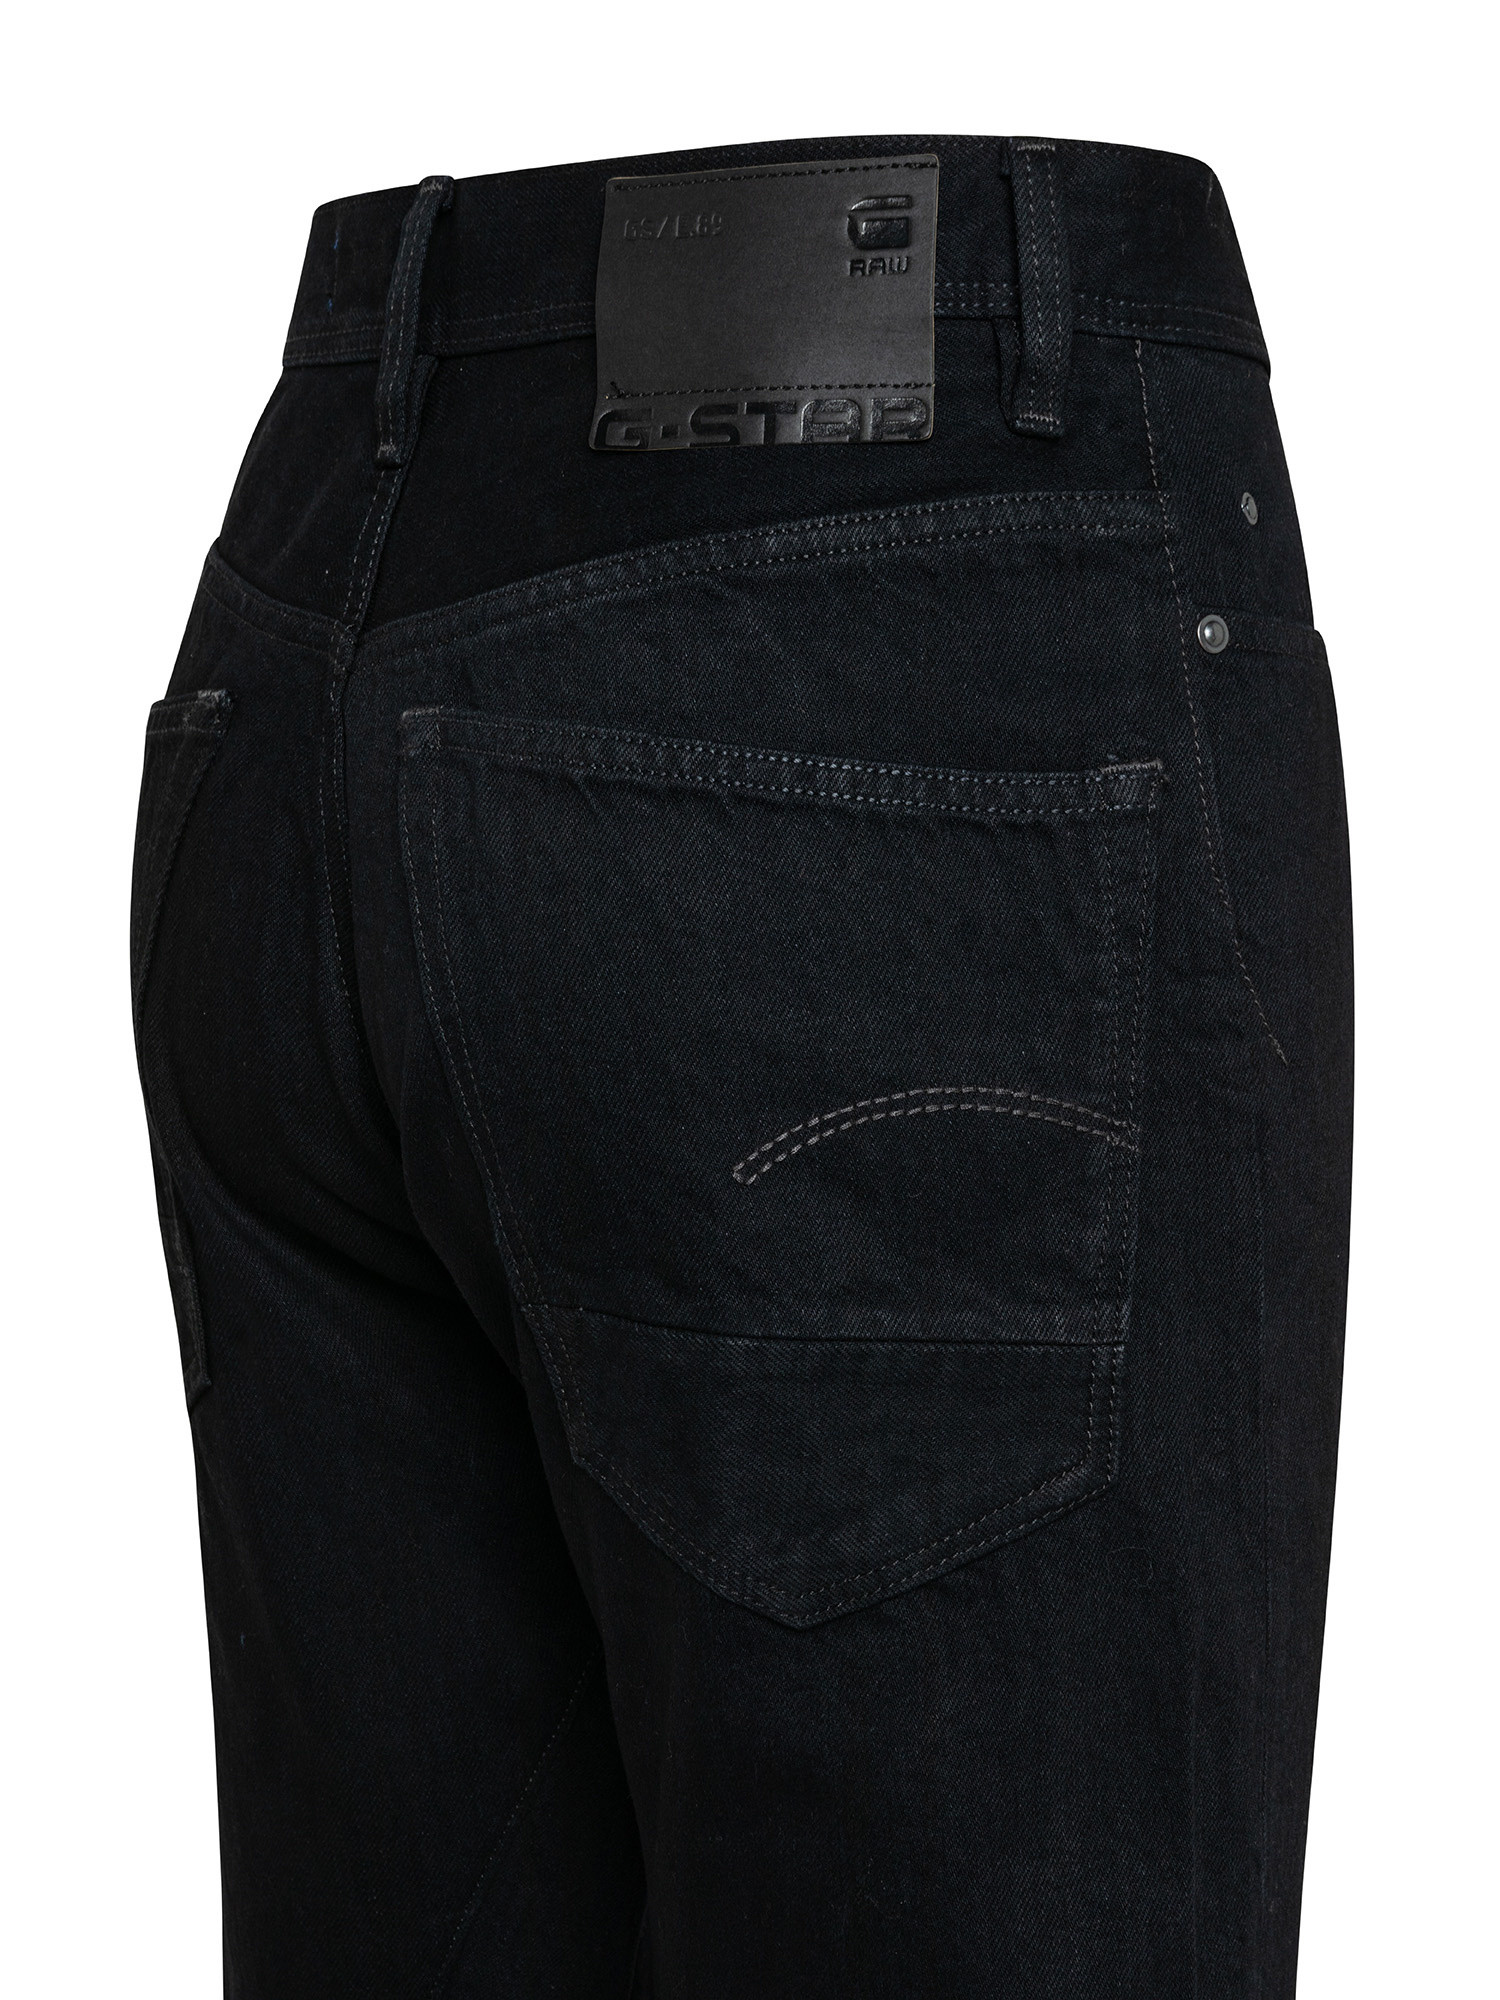 G-Star Five pocket jeans, Black, large image number 2